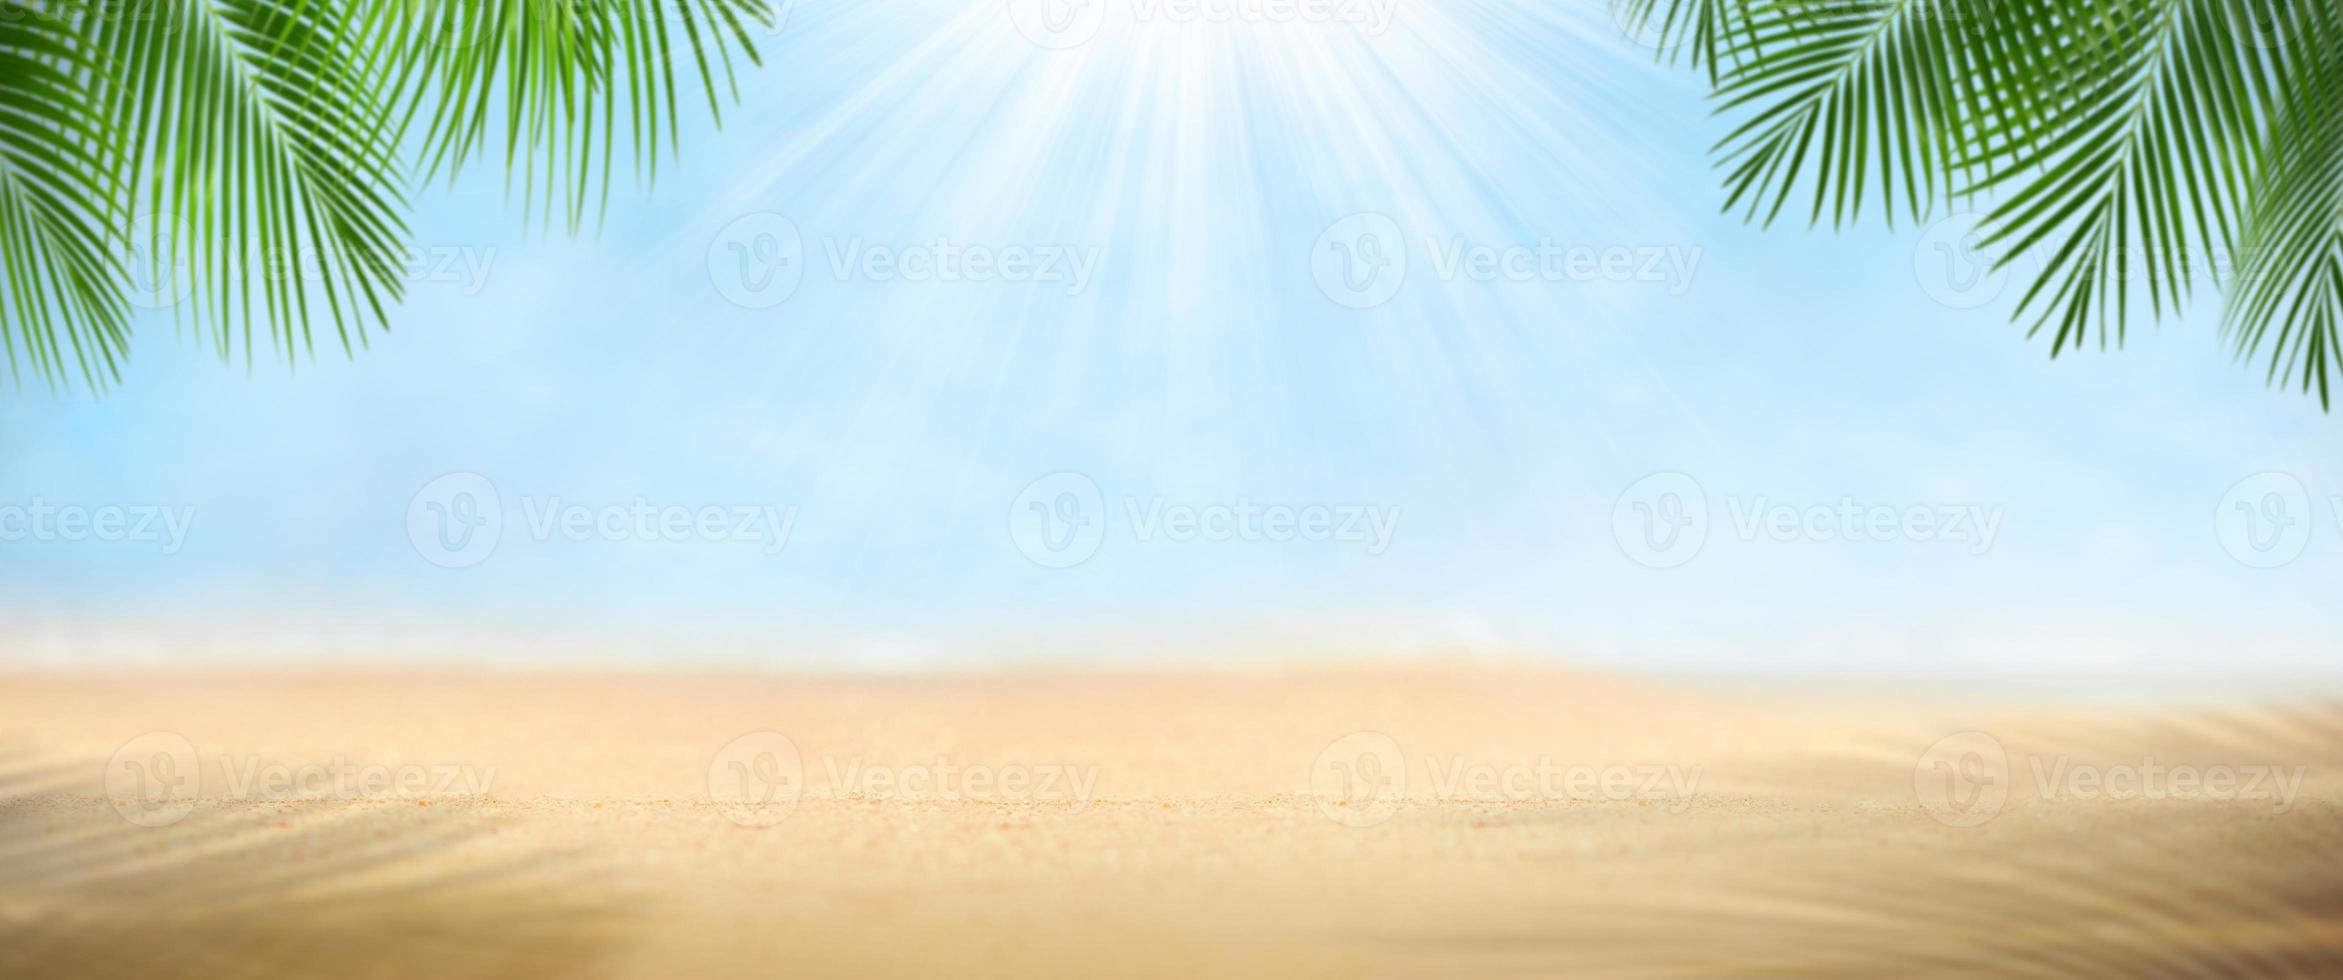 folhas de palmeira na praia foto